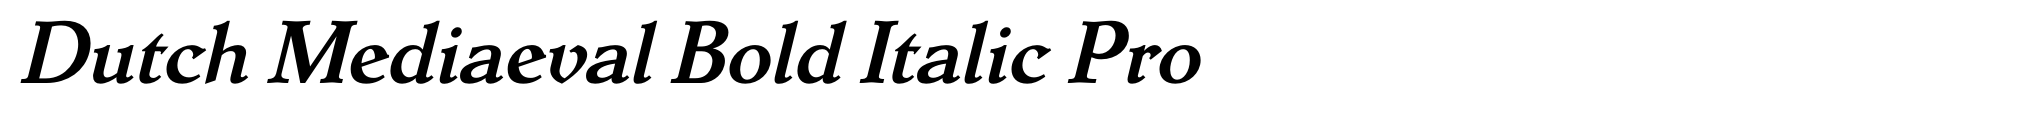 Dutch Mediaeval Bold Italic Pro image